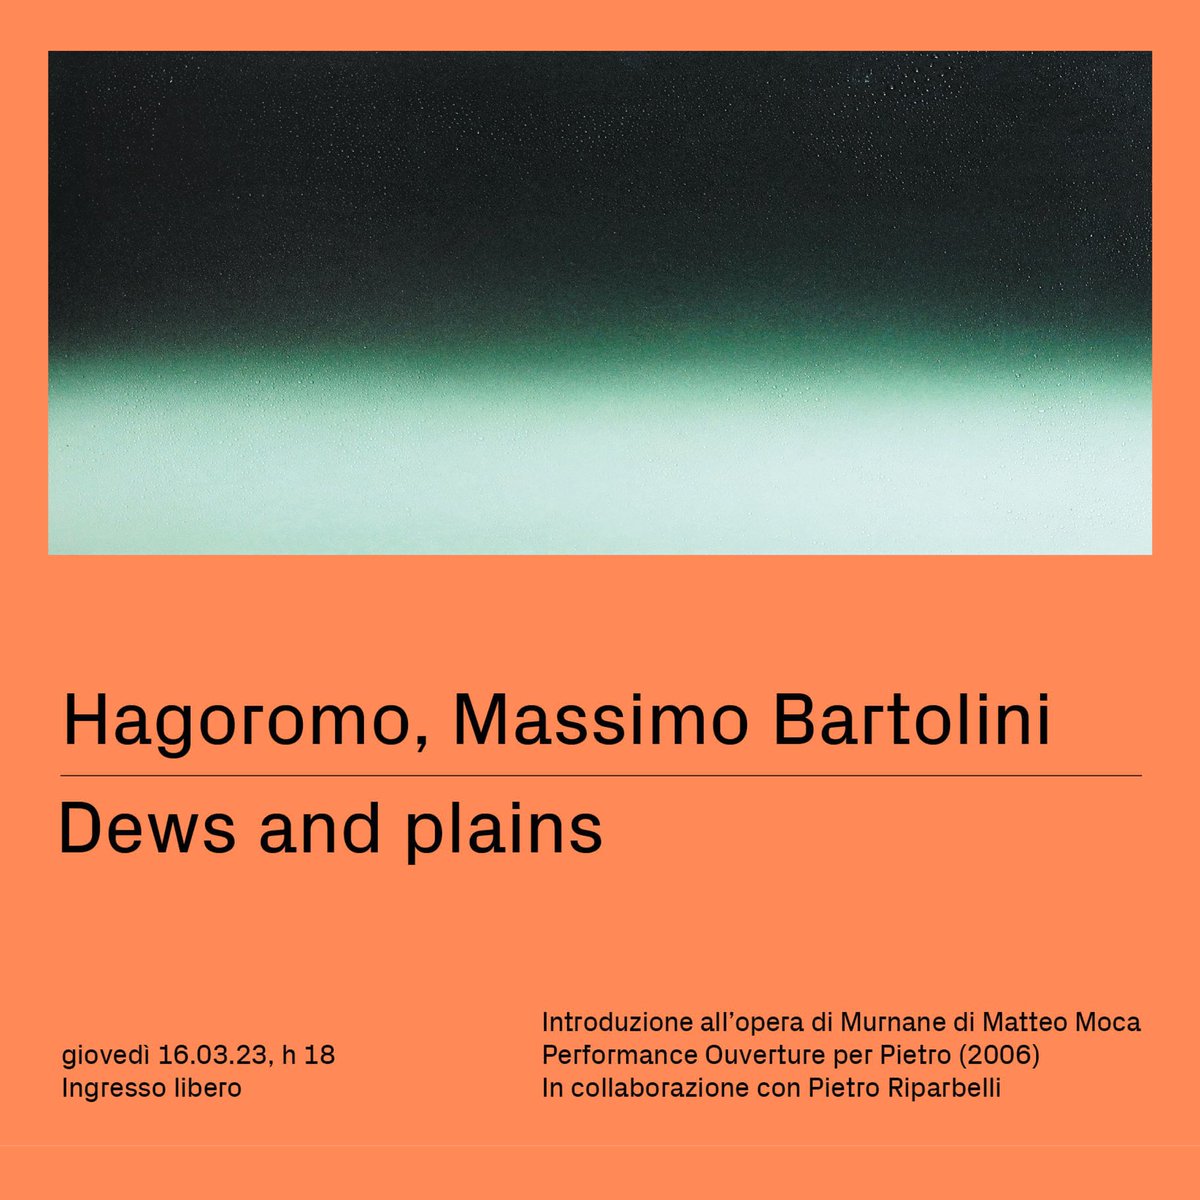 Giovedì 16 marzo, ore 18 con @MatteoMoca, quarto appuntamento del public program della mostra Hagoromo di #MassimoBartolini. Prenotazioni a questo link: bit.ly/3YAvwG6